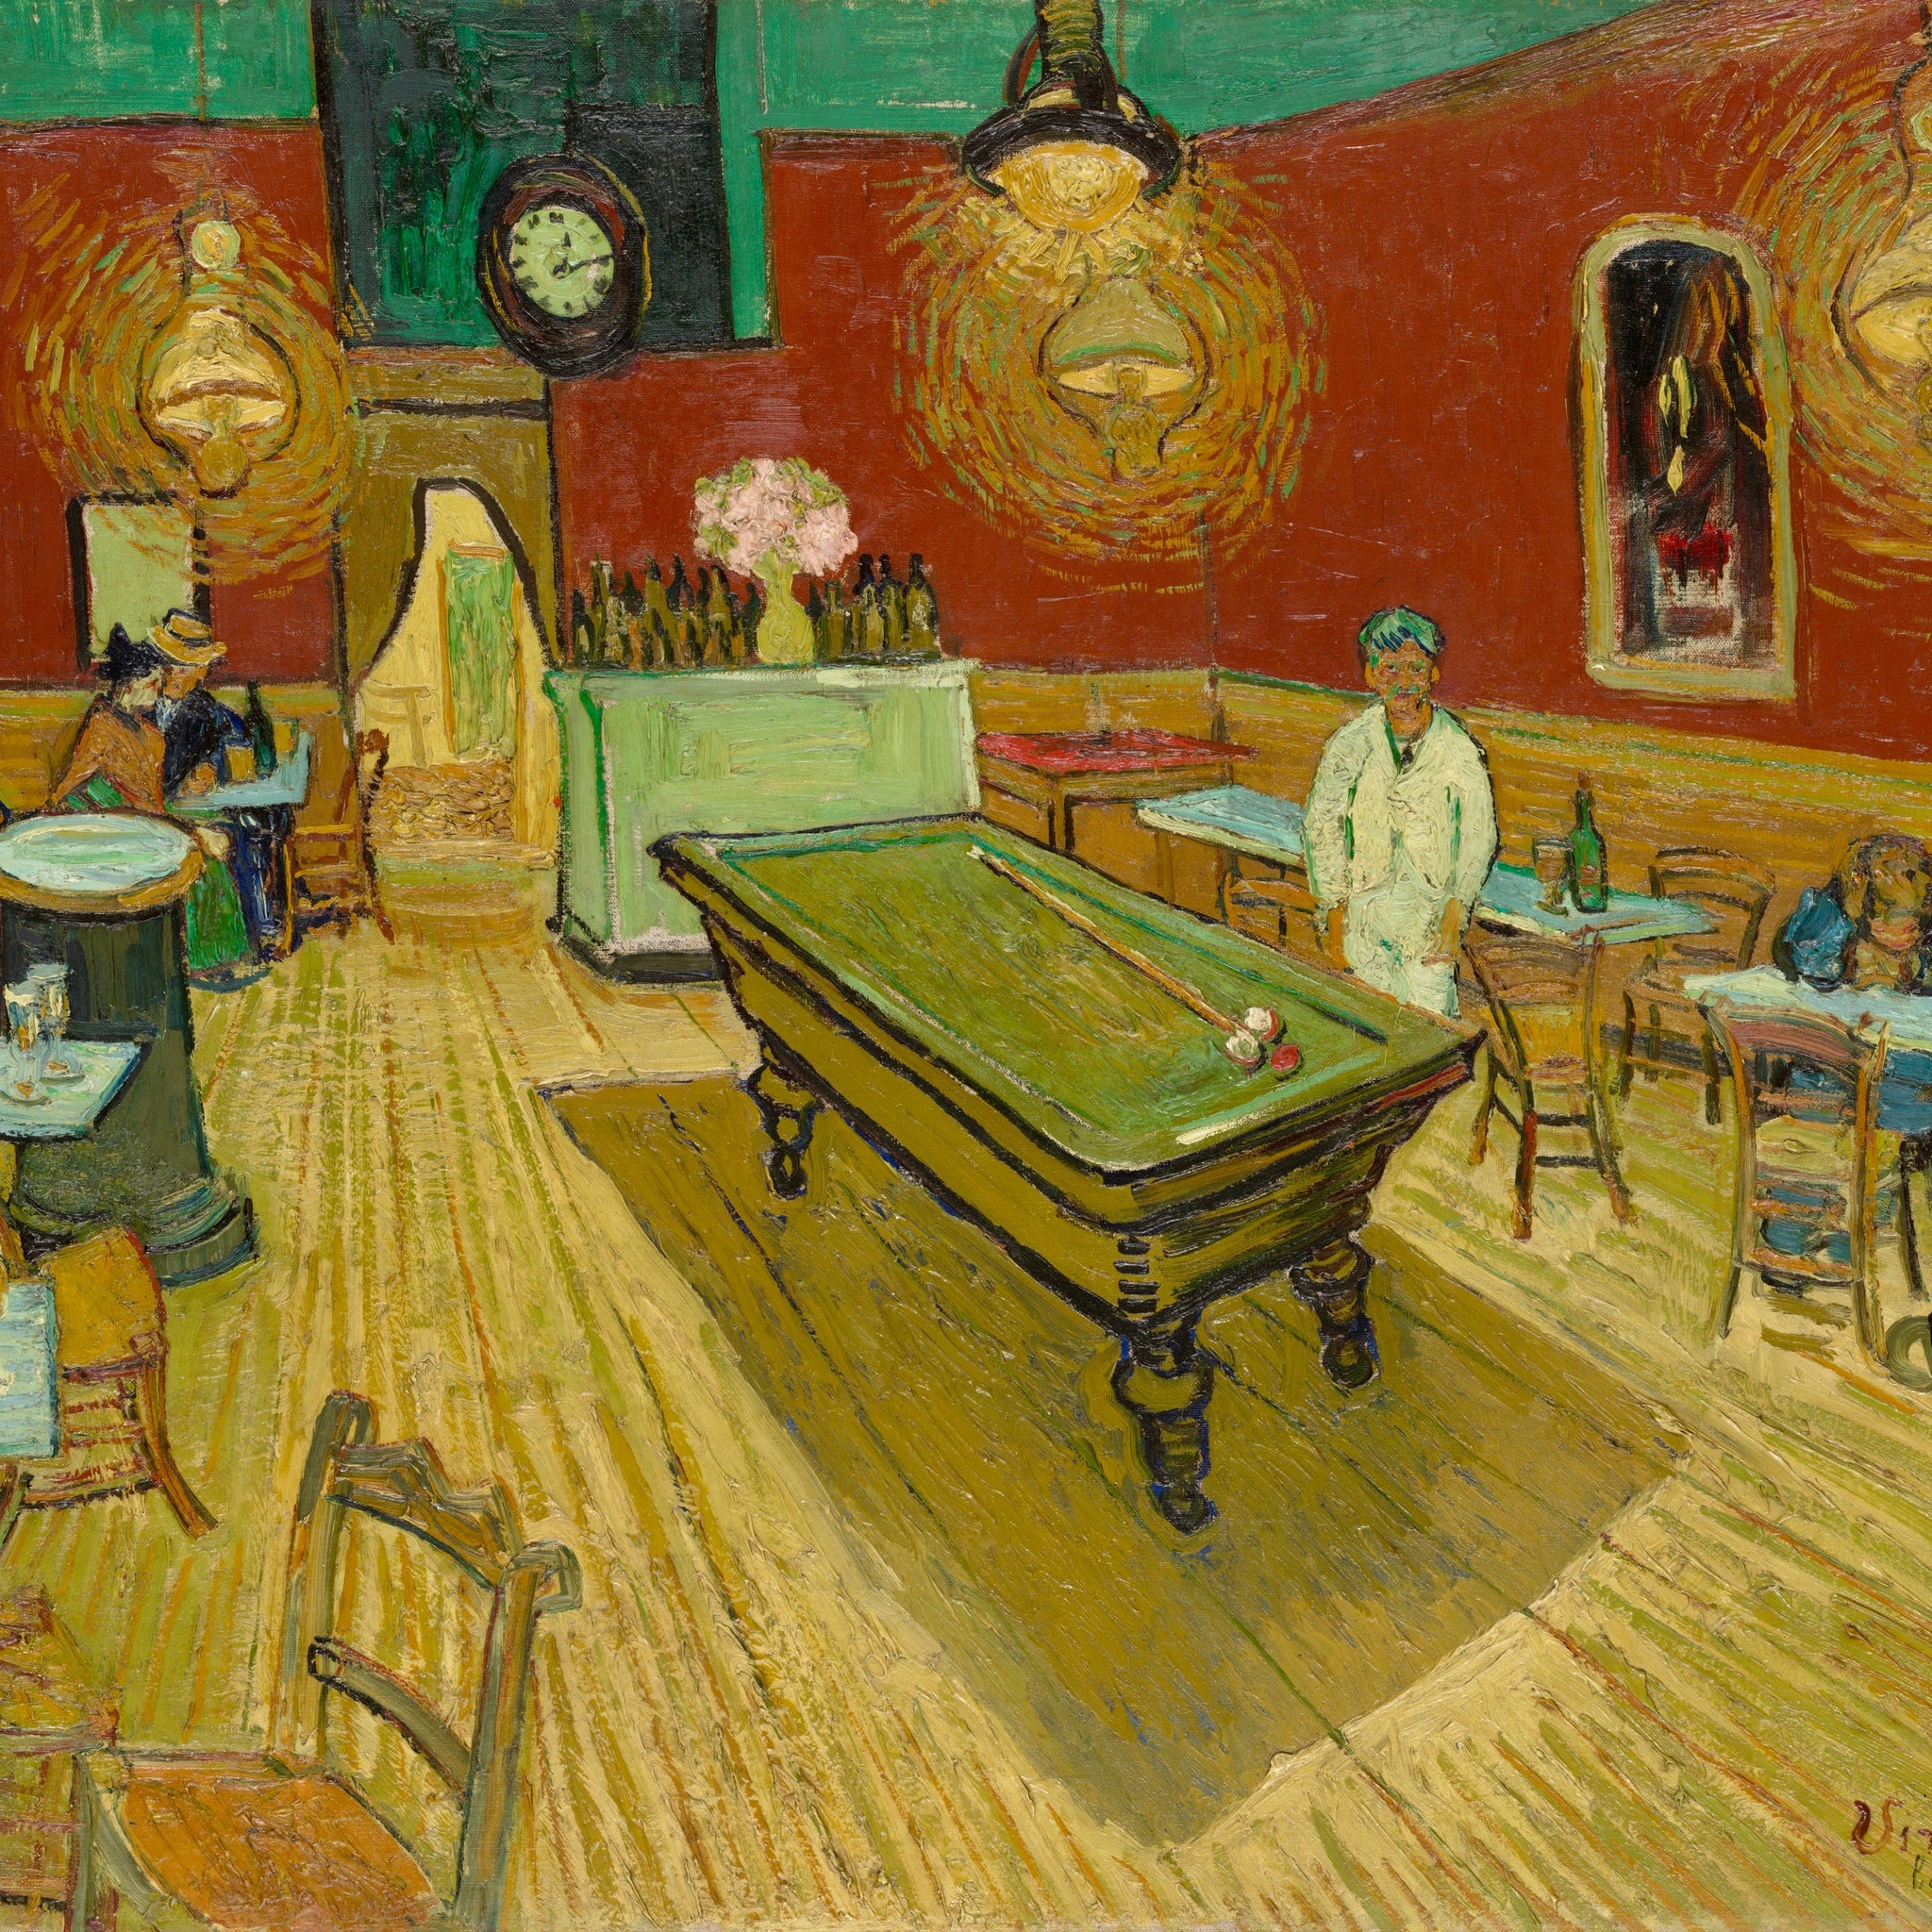 Le Café de nuit - Van Gogh